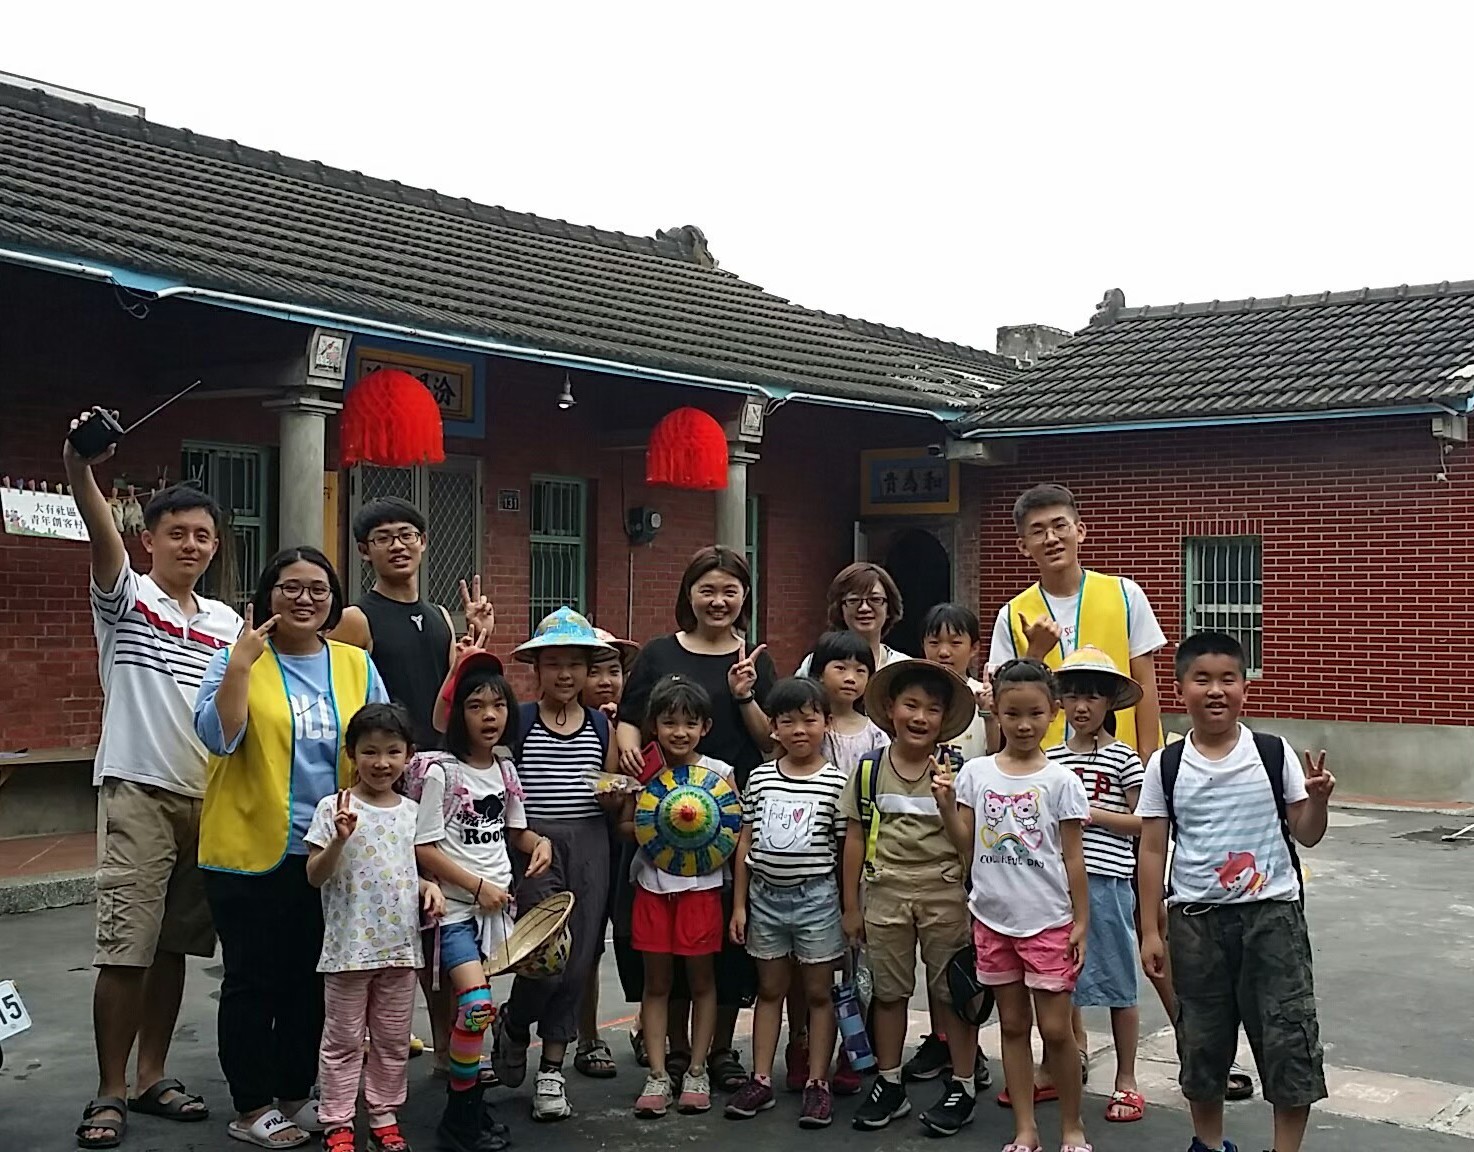 王元弘（左1）、許雅筑（左2）、陳祈佑（左3，黑色衣服）及魏智瀚同學（右，黃色背心）帶領兒童營隊後與小朋友合照